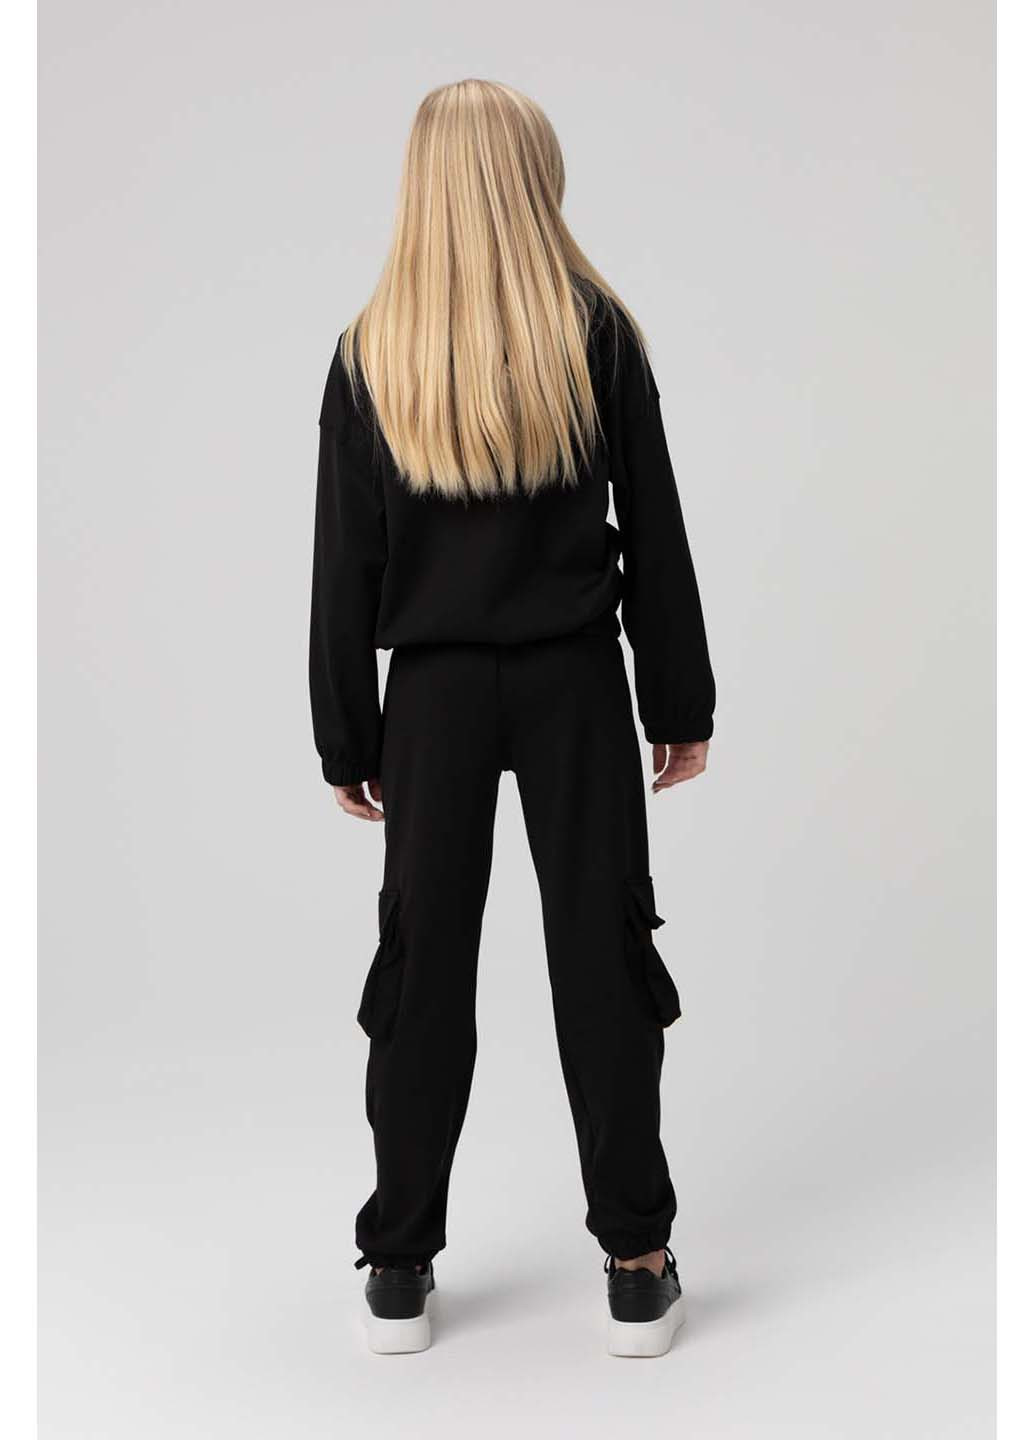 Черный демисезонный костюмы для девочки кофта, брюки Viollen